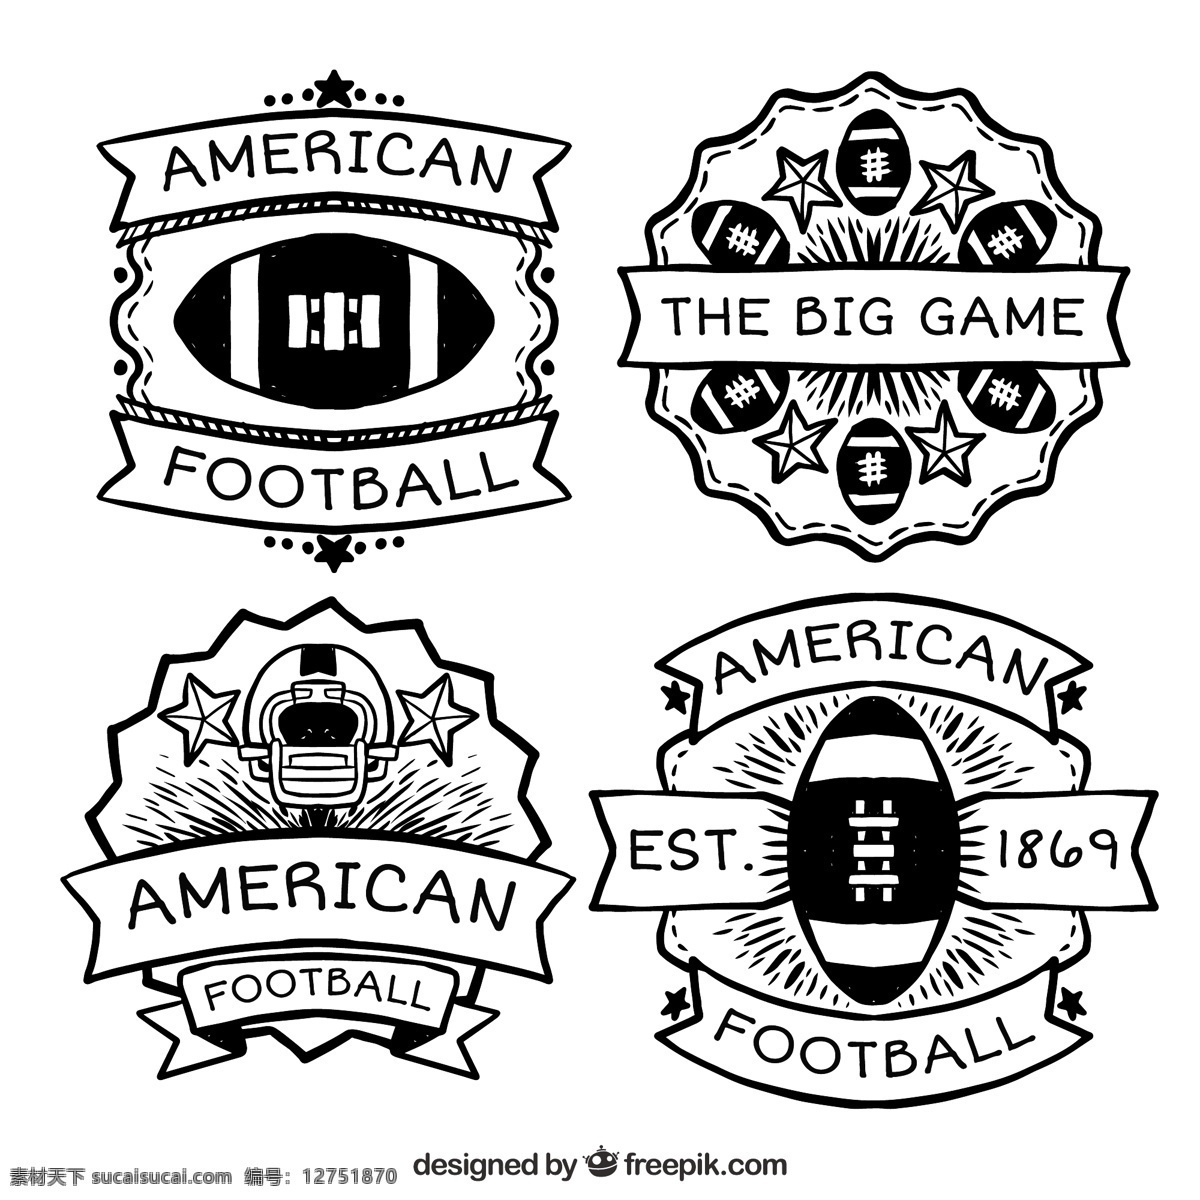 美国 足球 徽章 伟大 收藏 背景 古董 手 古董背景 体育 手绘 球 装饰 比赛 美式足球 旧货徽章 橄榄球 绘画